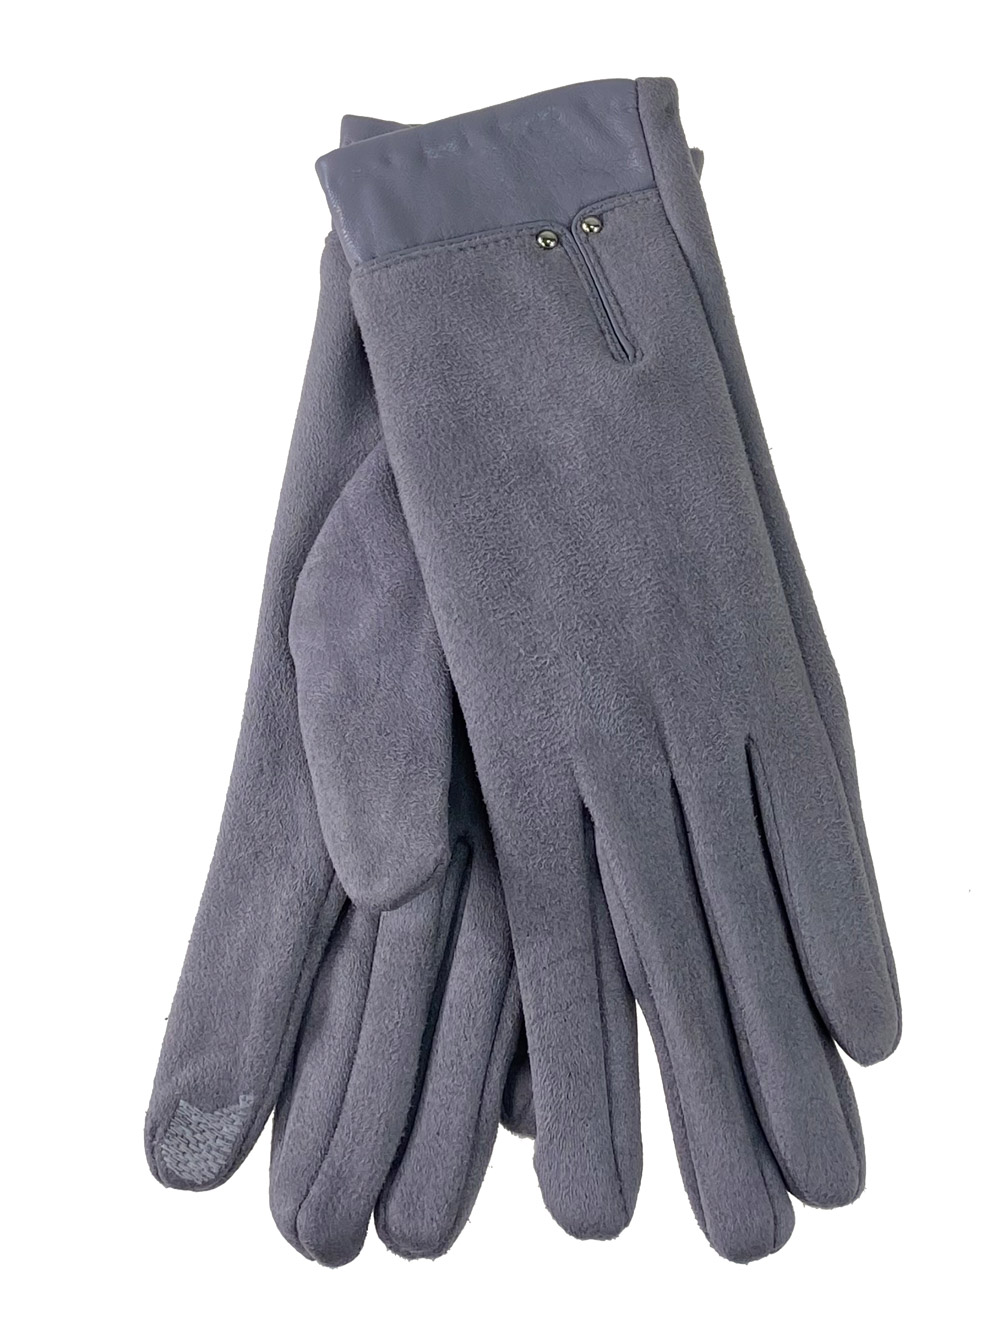 Велюровые женские перчатки с манжетой из натуральной кожи, цвет серый